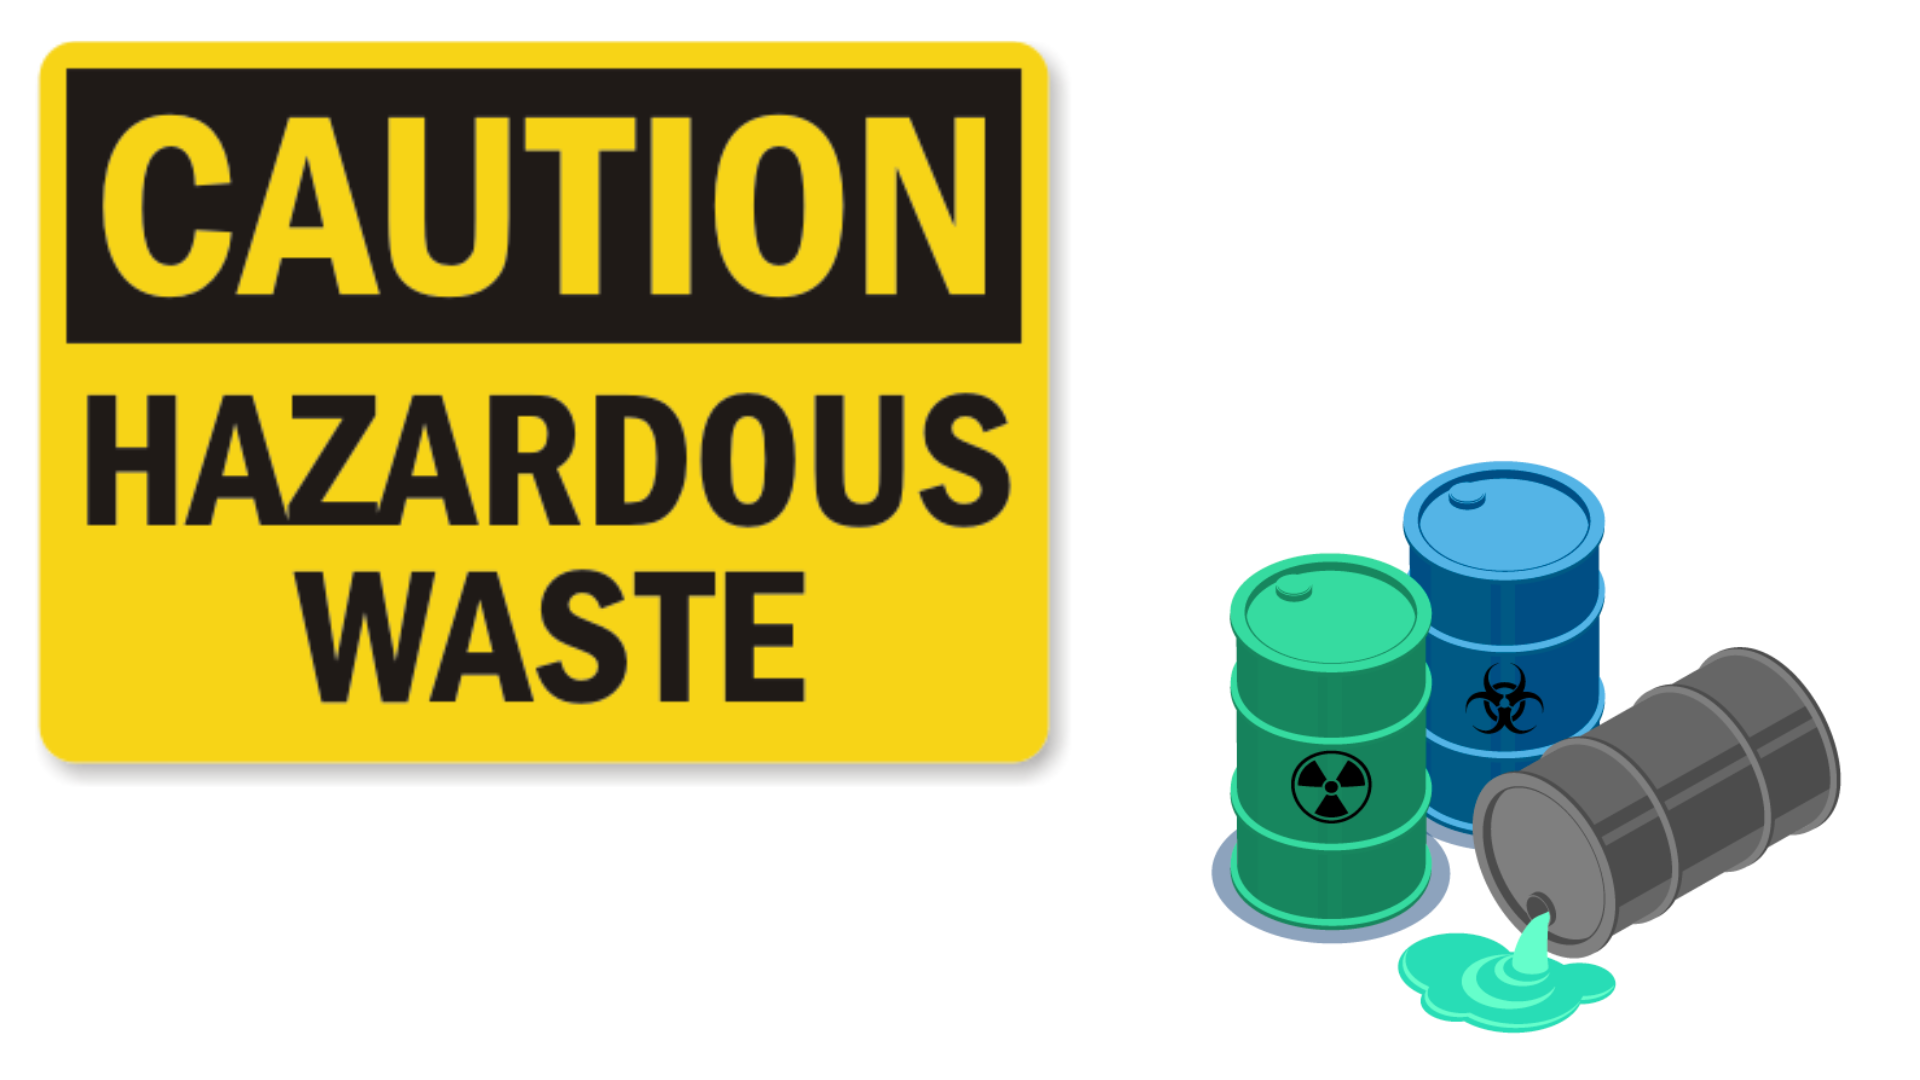 hazardous-waste-waste-management-dangerous-goods-toxic-waste-toxic-waste